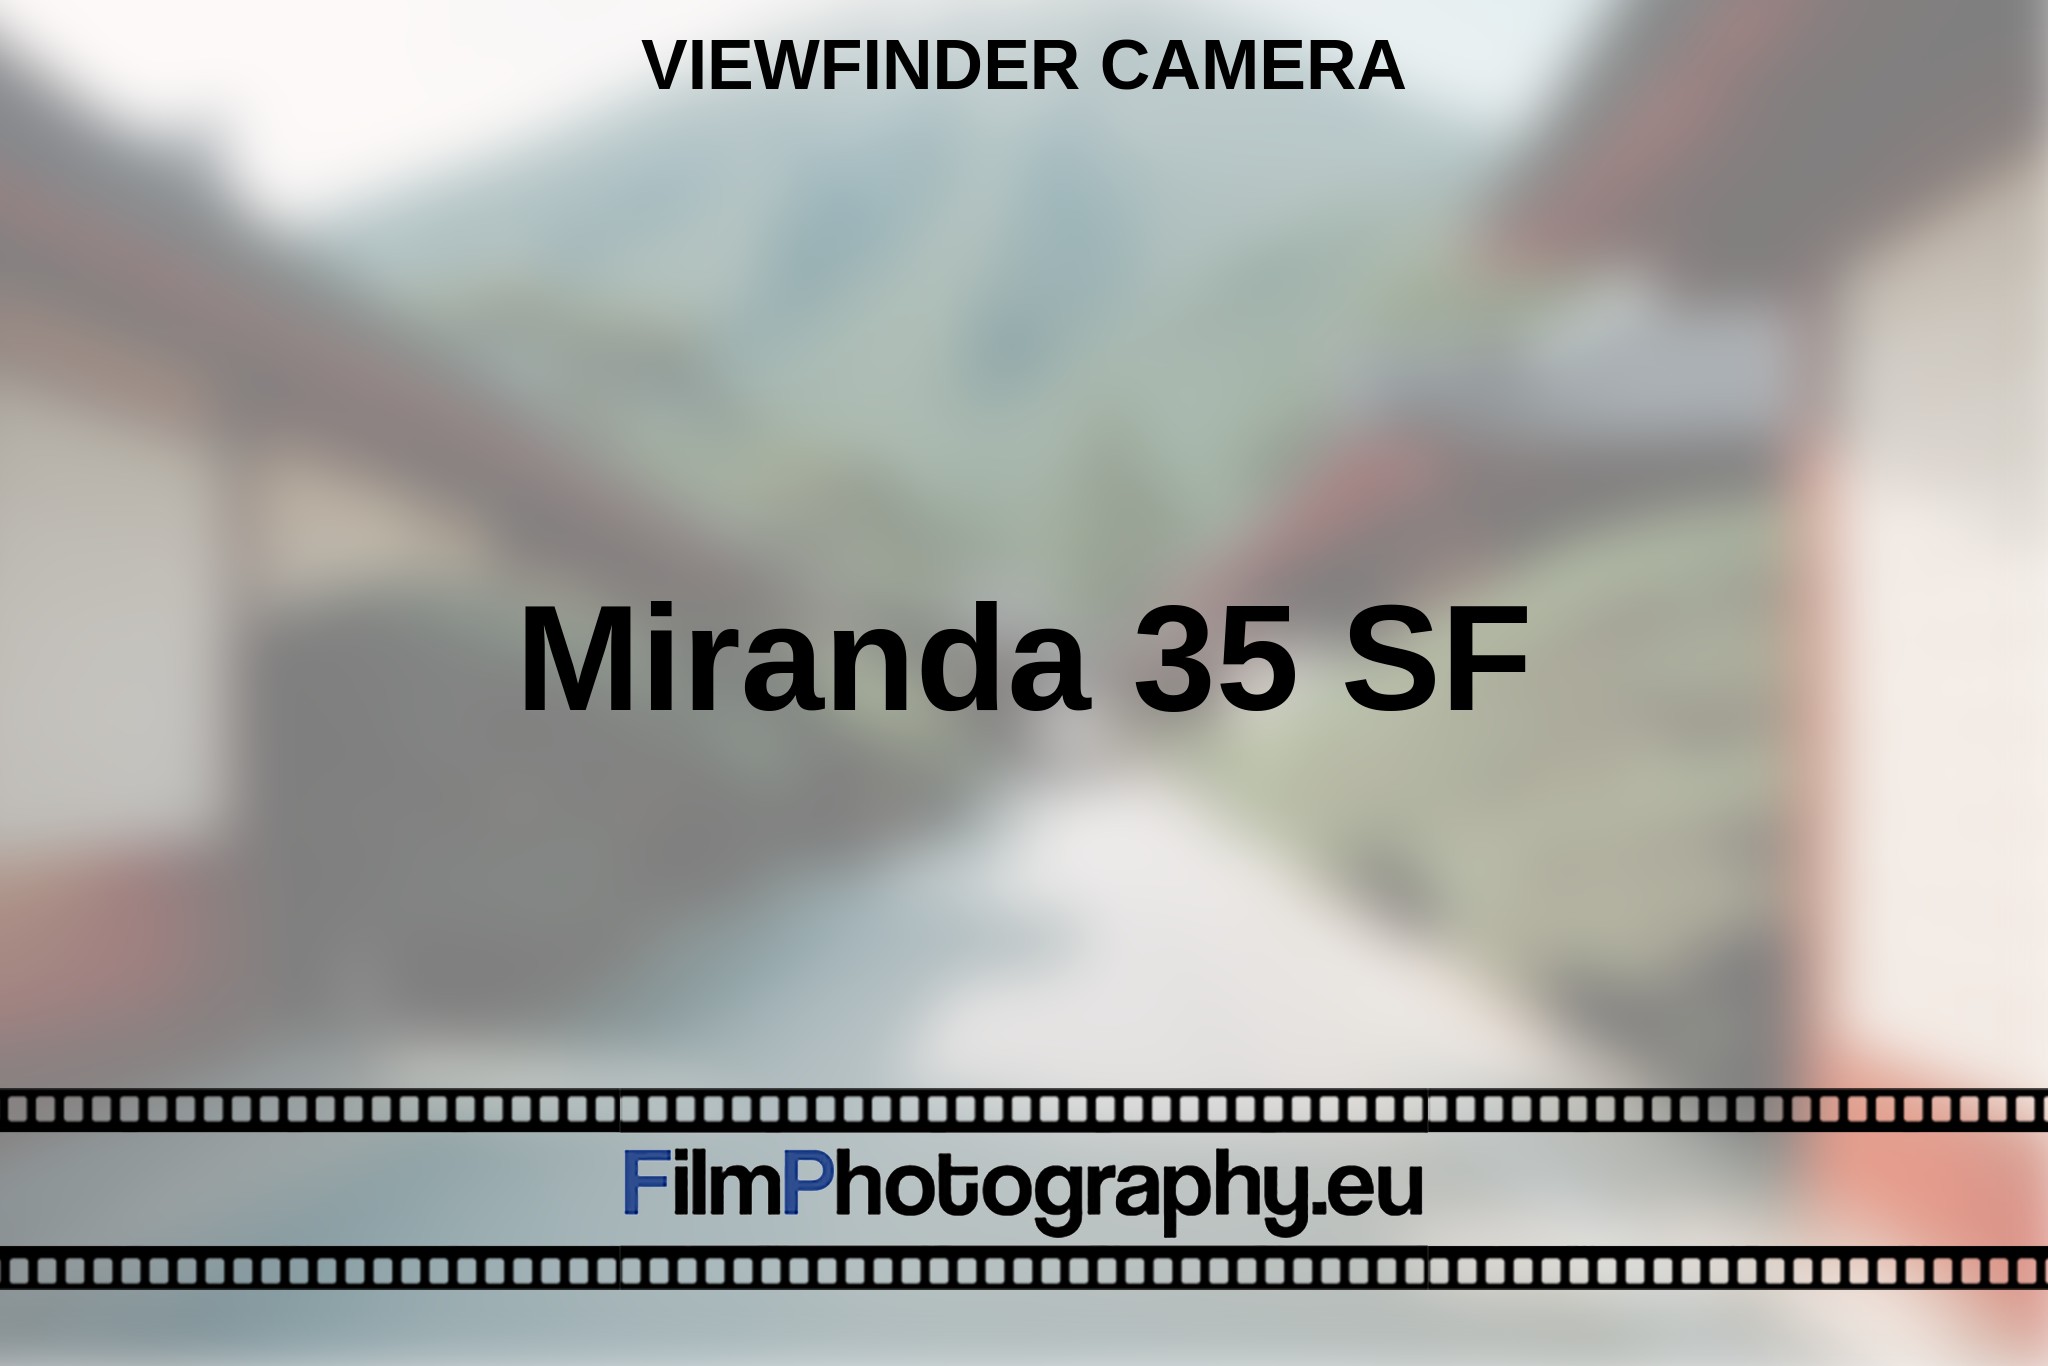 miranda-35-sf-viewfinder-camera-en-bnv.jpg